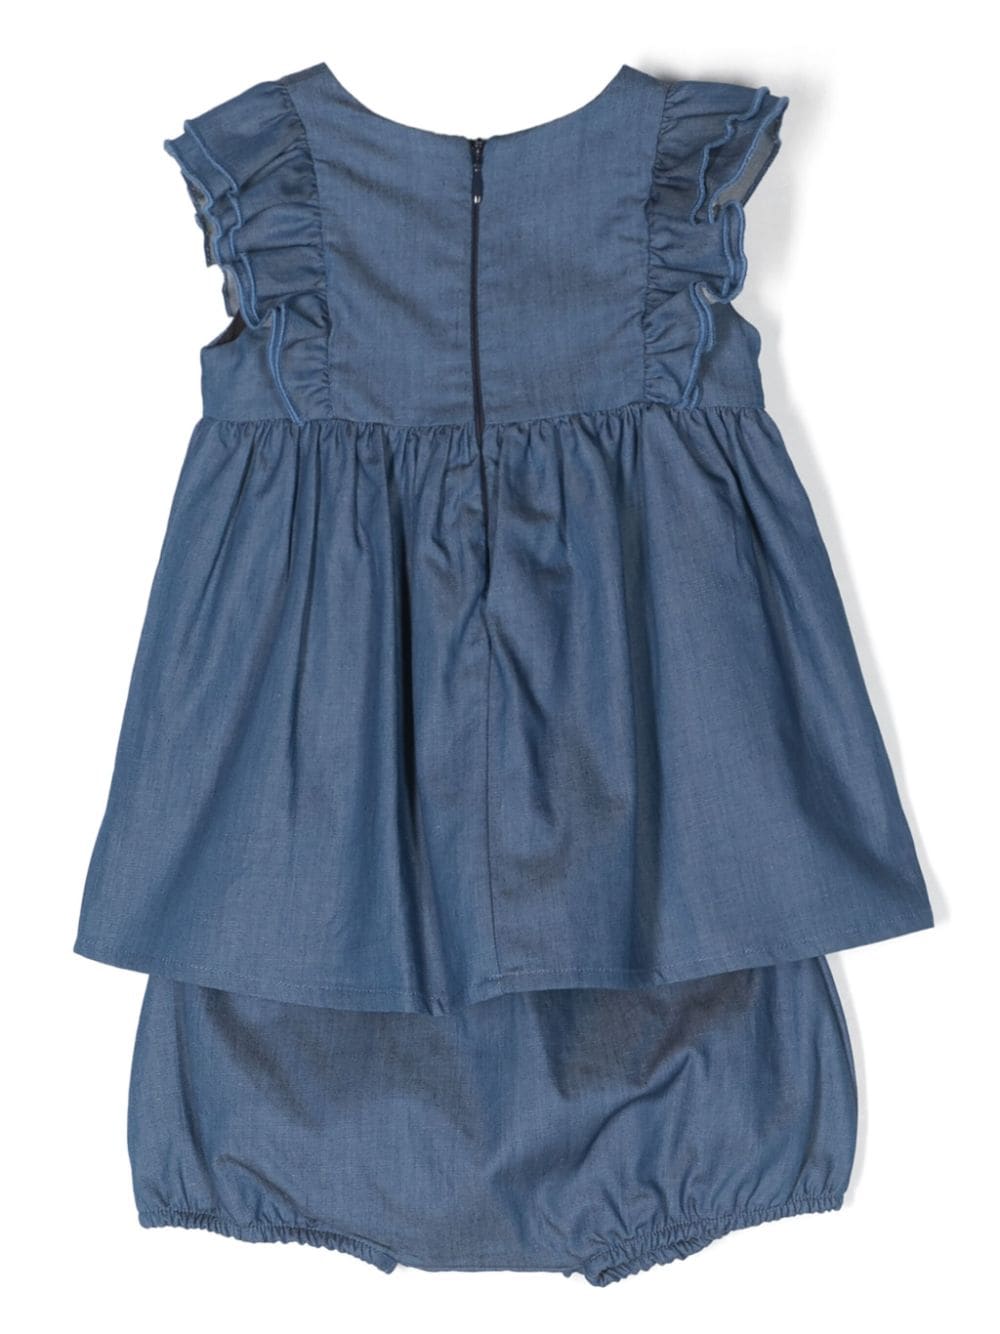 Blue denim dress for baby girls